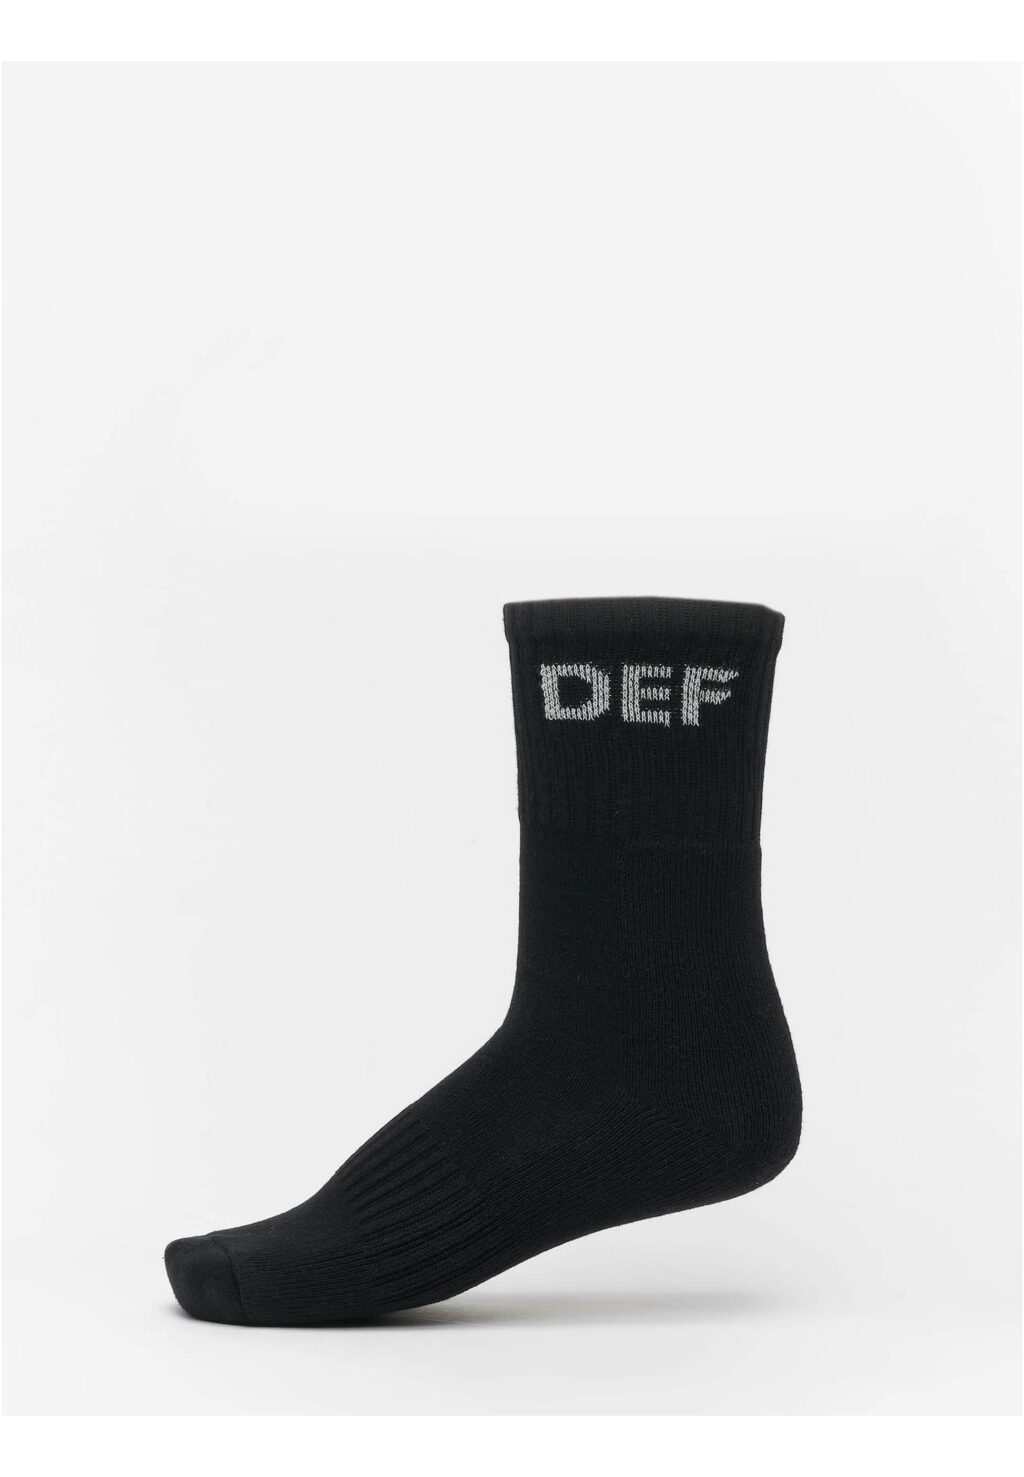 Socks black DFSX001